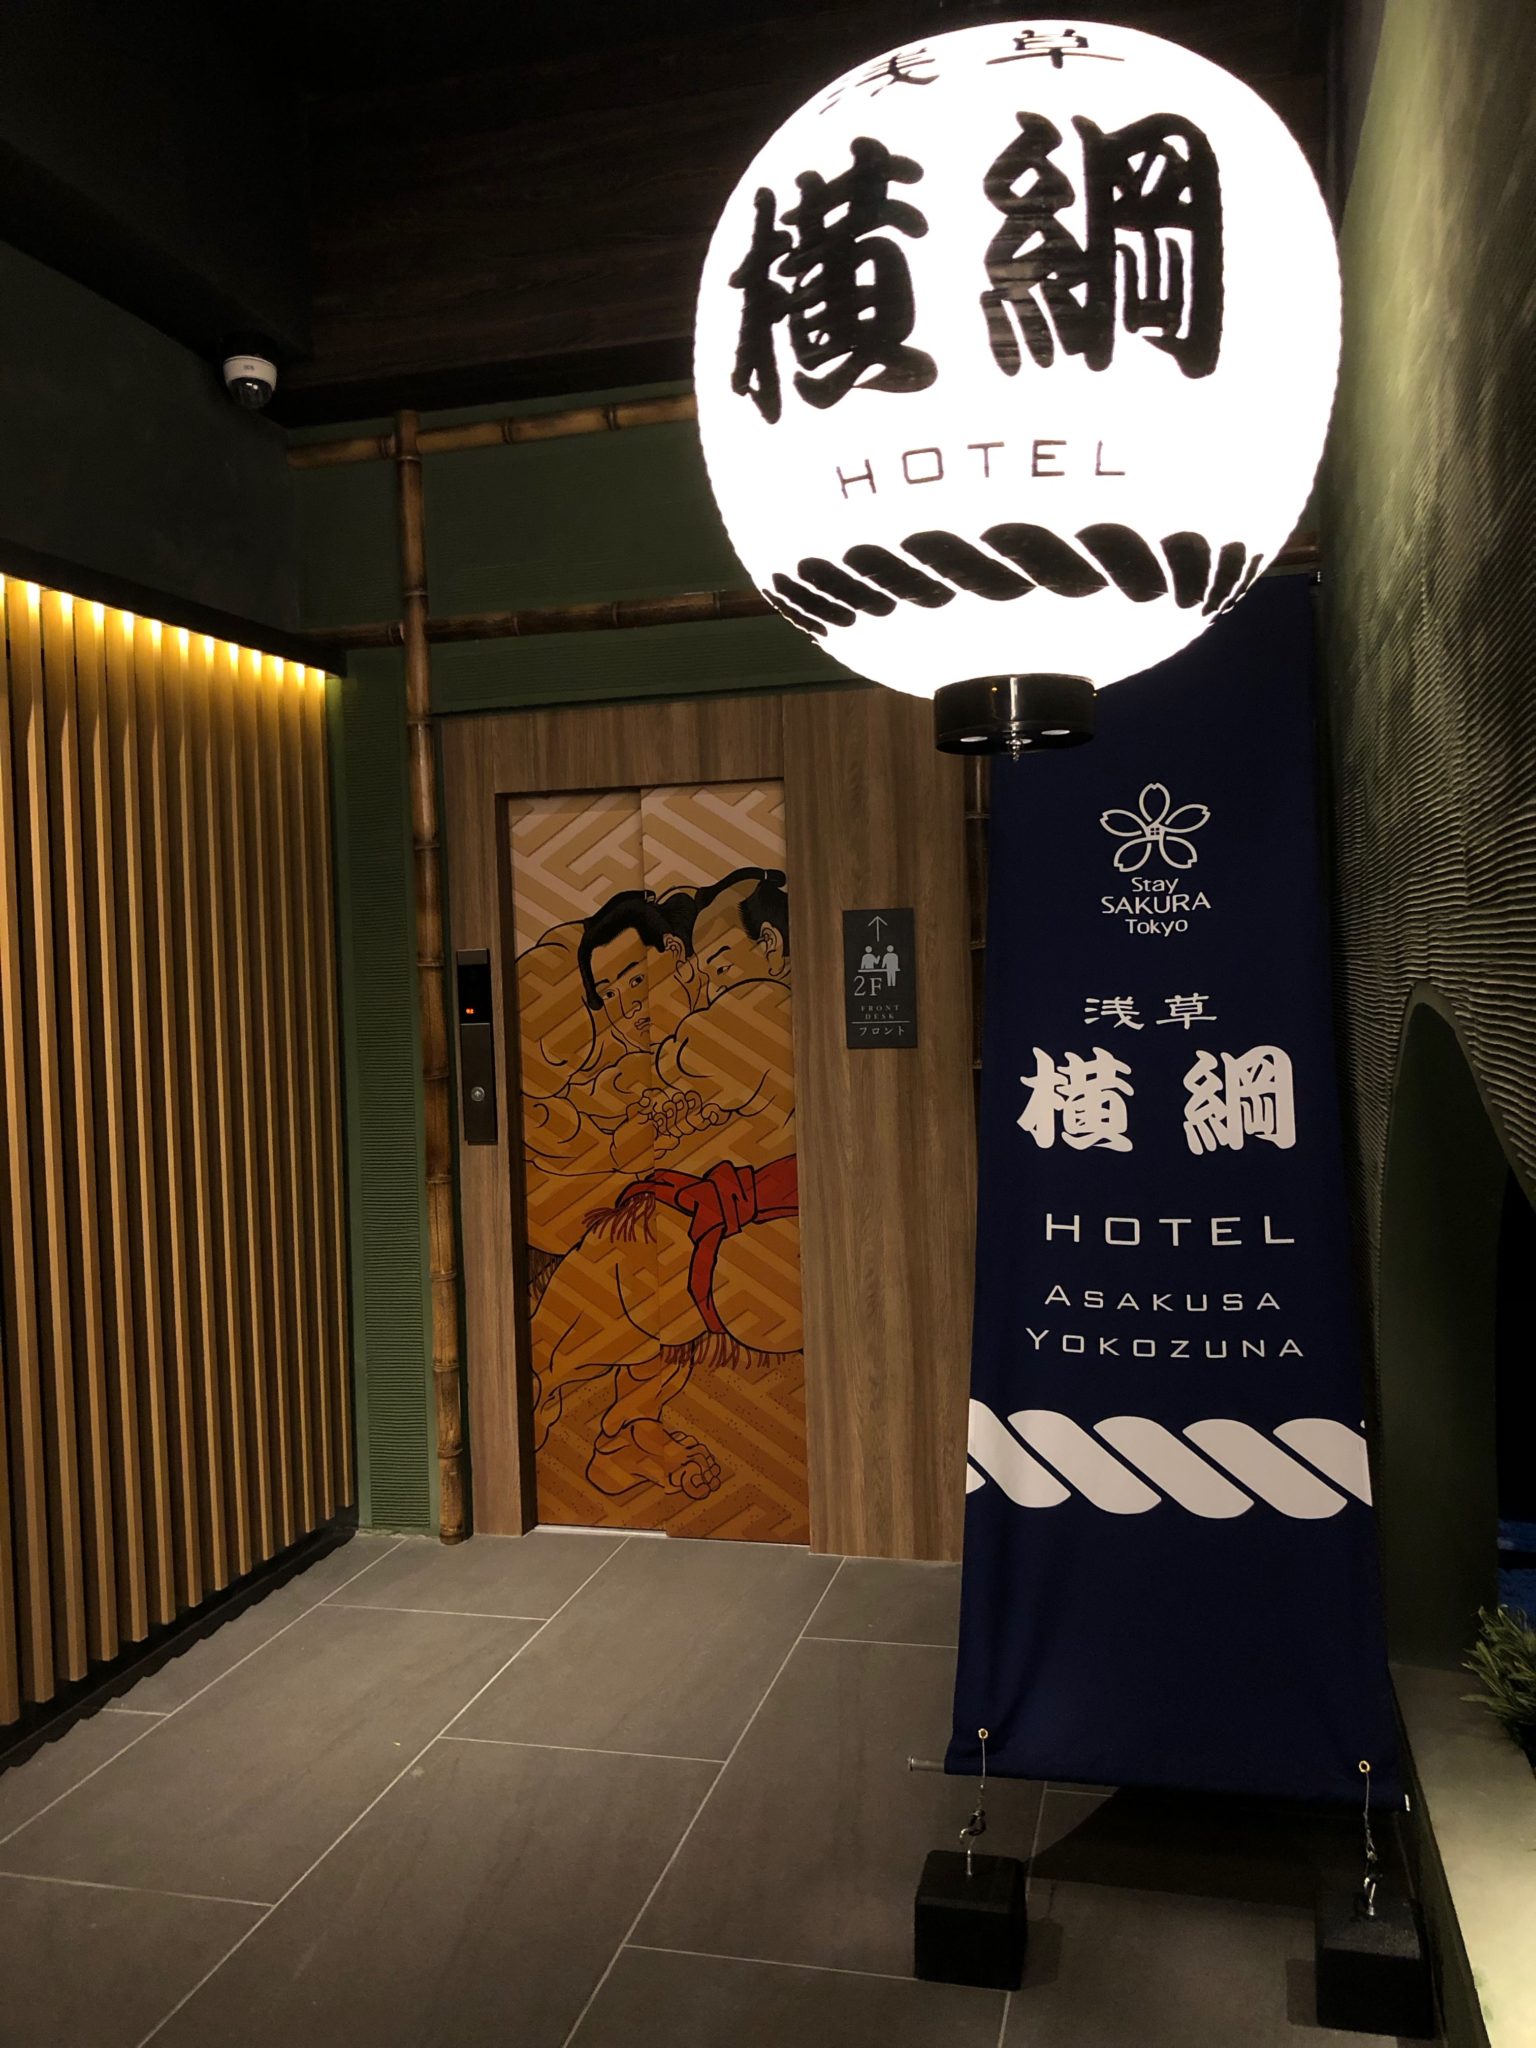 相撲テーマホテル「Stay SAKURA Tokyo 浅草横綱」 堂々グランドオープン!